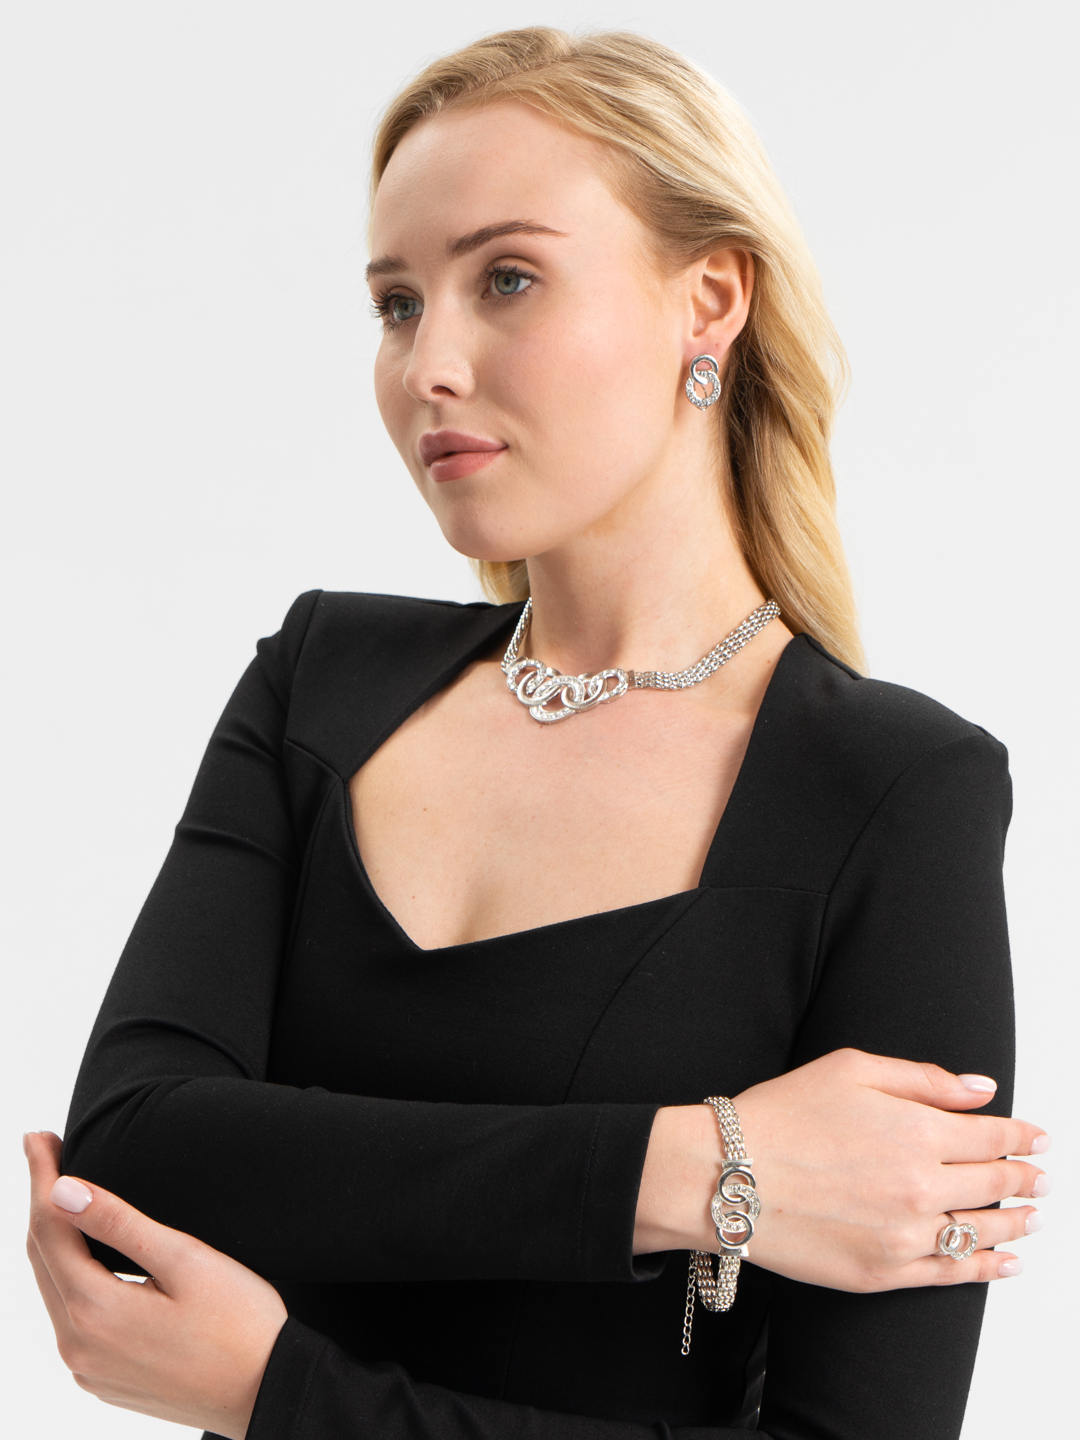 Комплект женских украшений: колье, браслет, серьги и кольца купить по цене450 ₽ в интернет-магазине KazanExpress